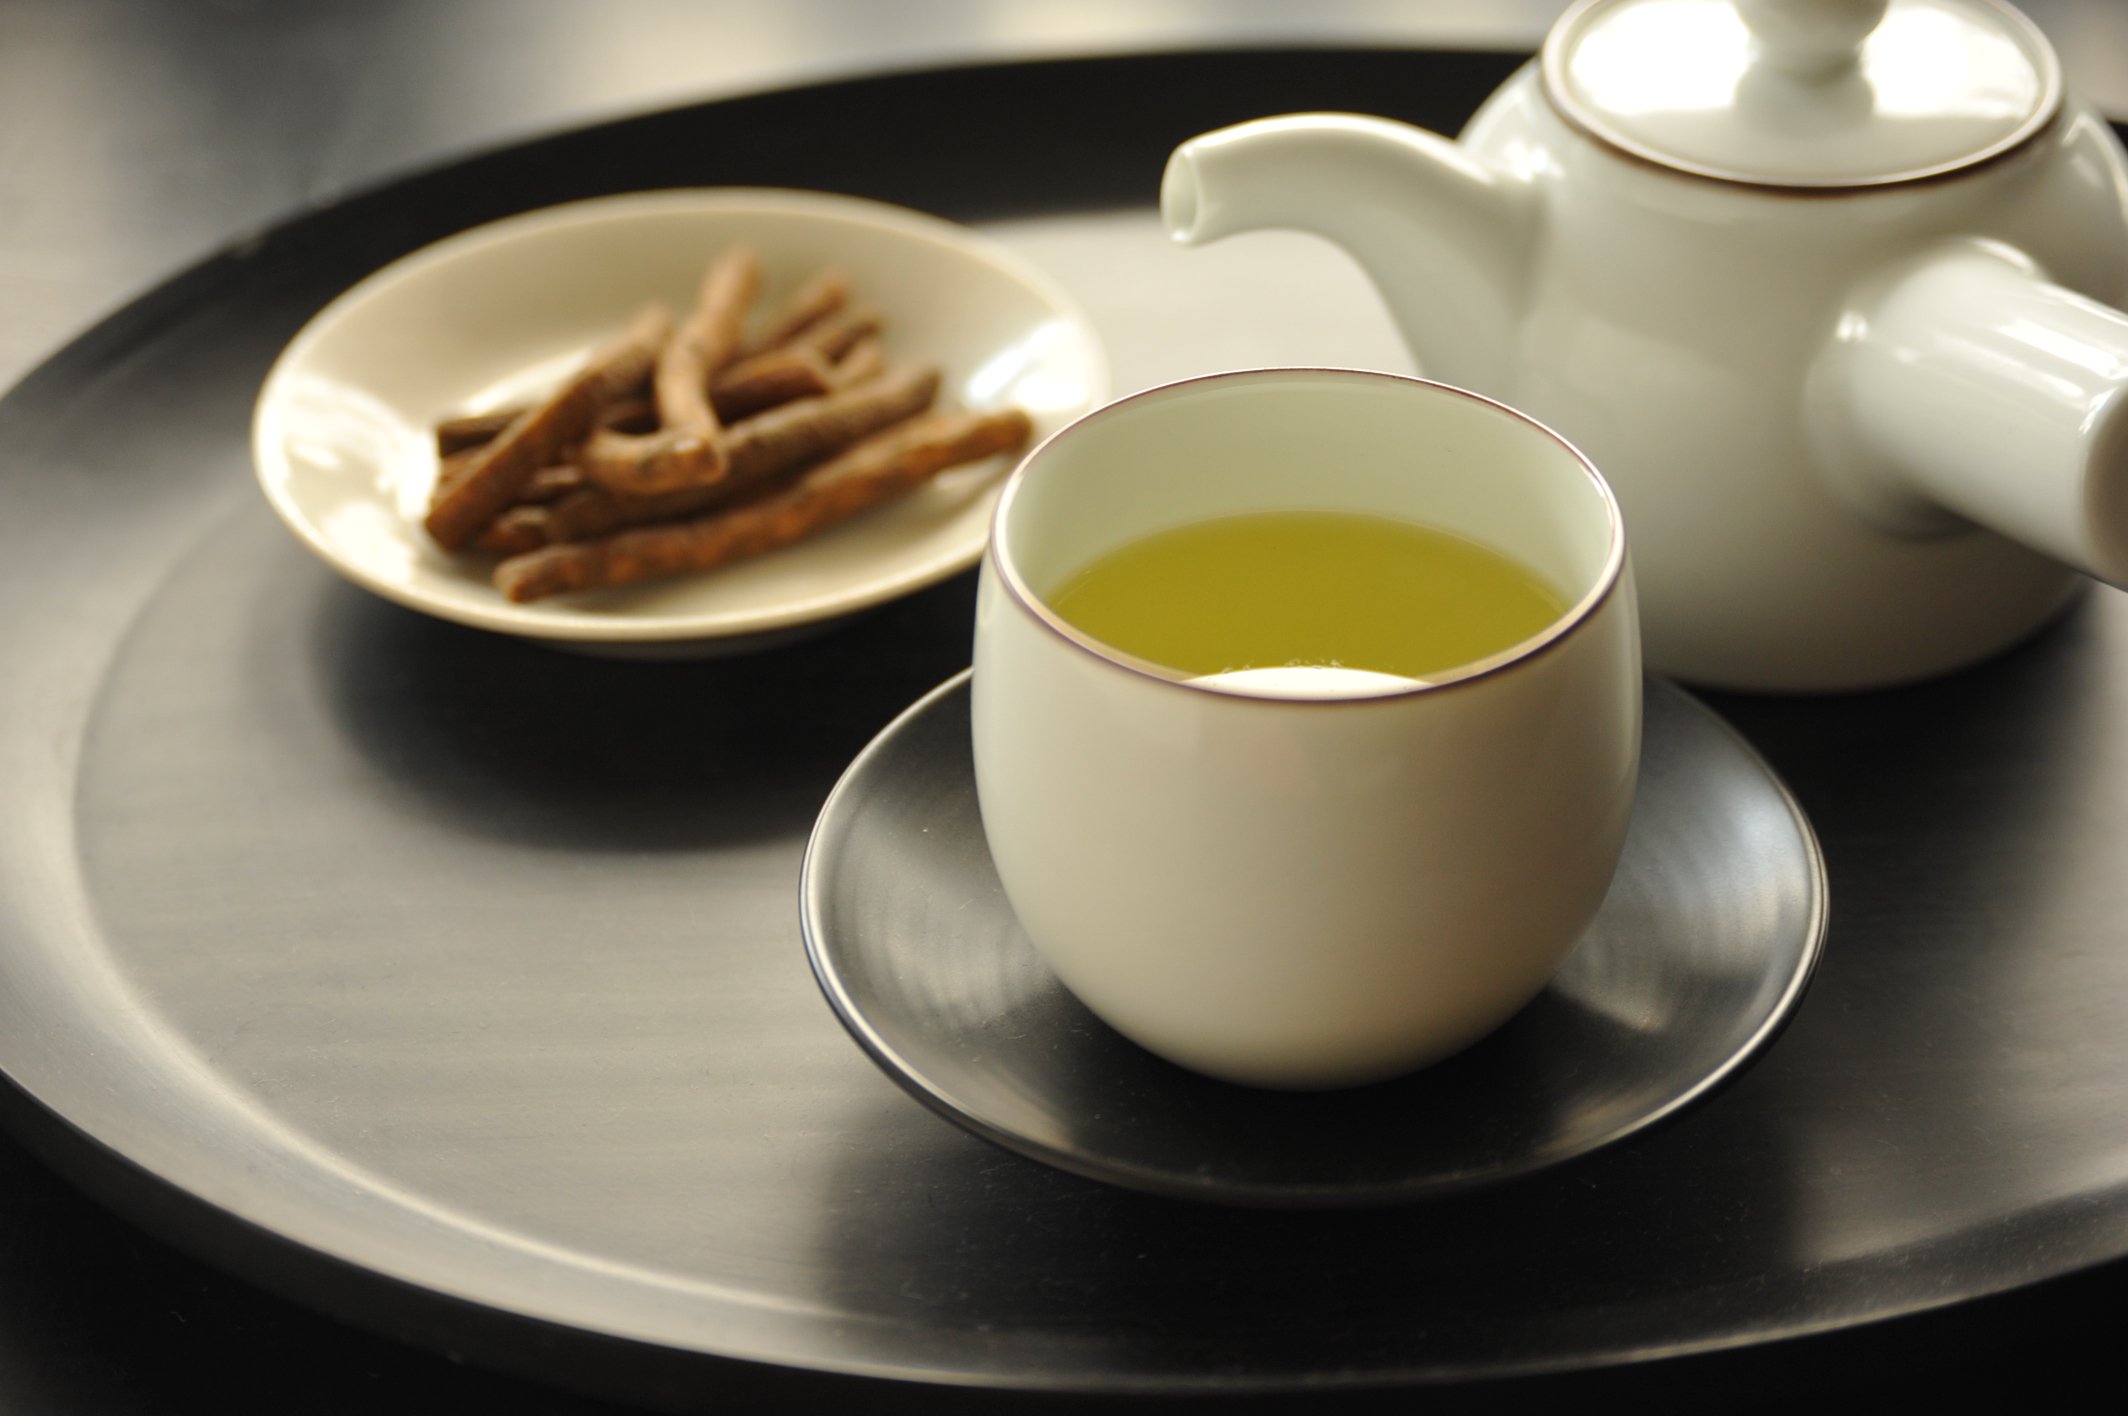 屋久島八万寿茶園 オーガニック緑茶 50g YAKUSHIMA HACHIMANJYU ORGANIC GREEN TEA 50g